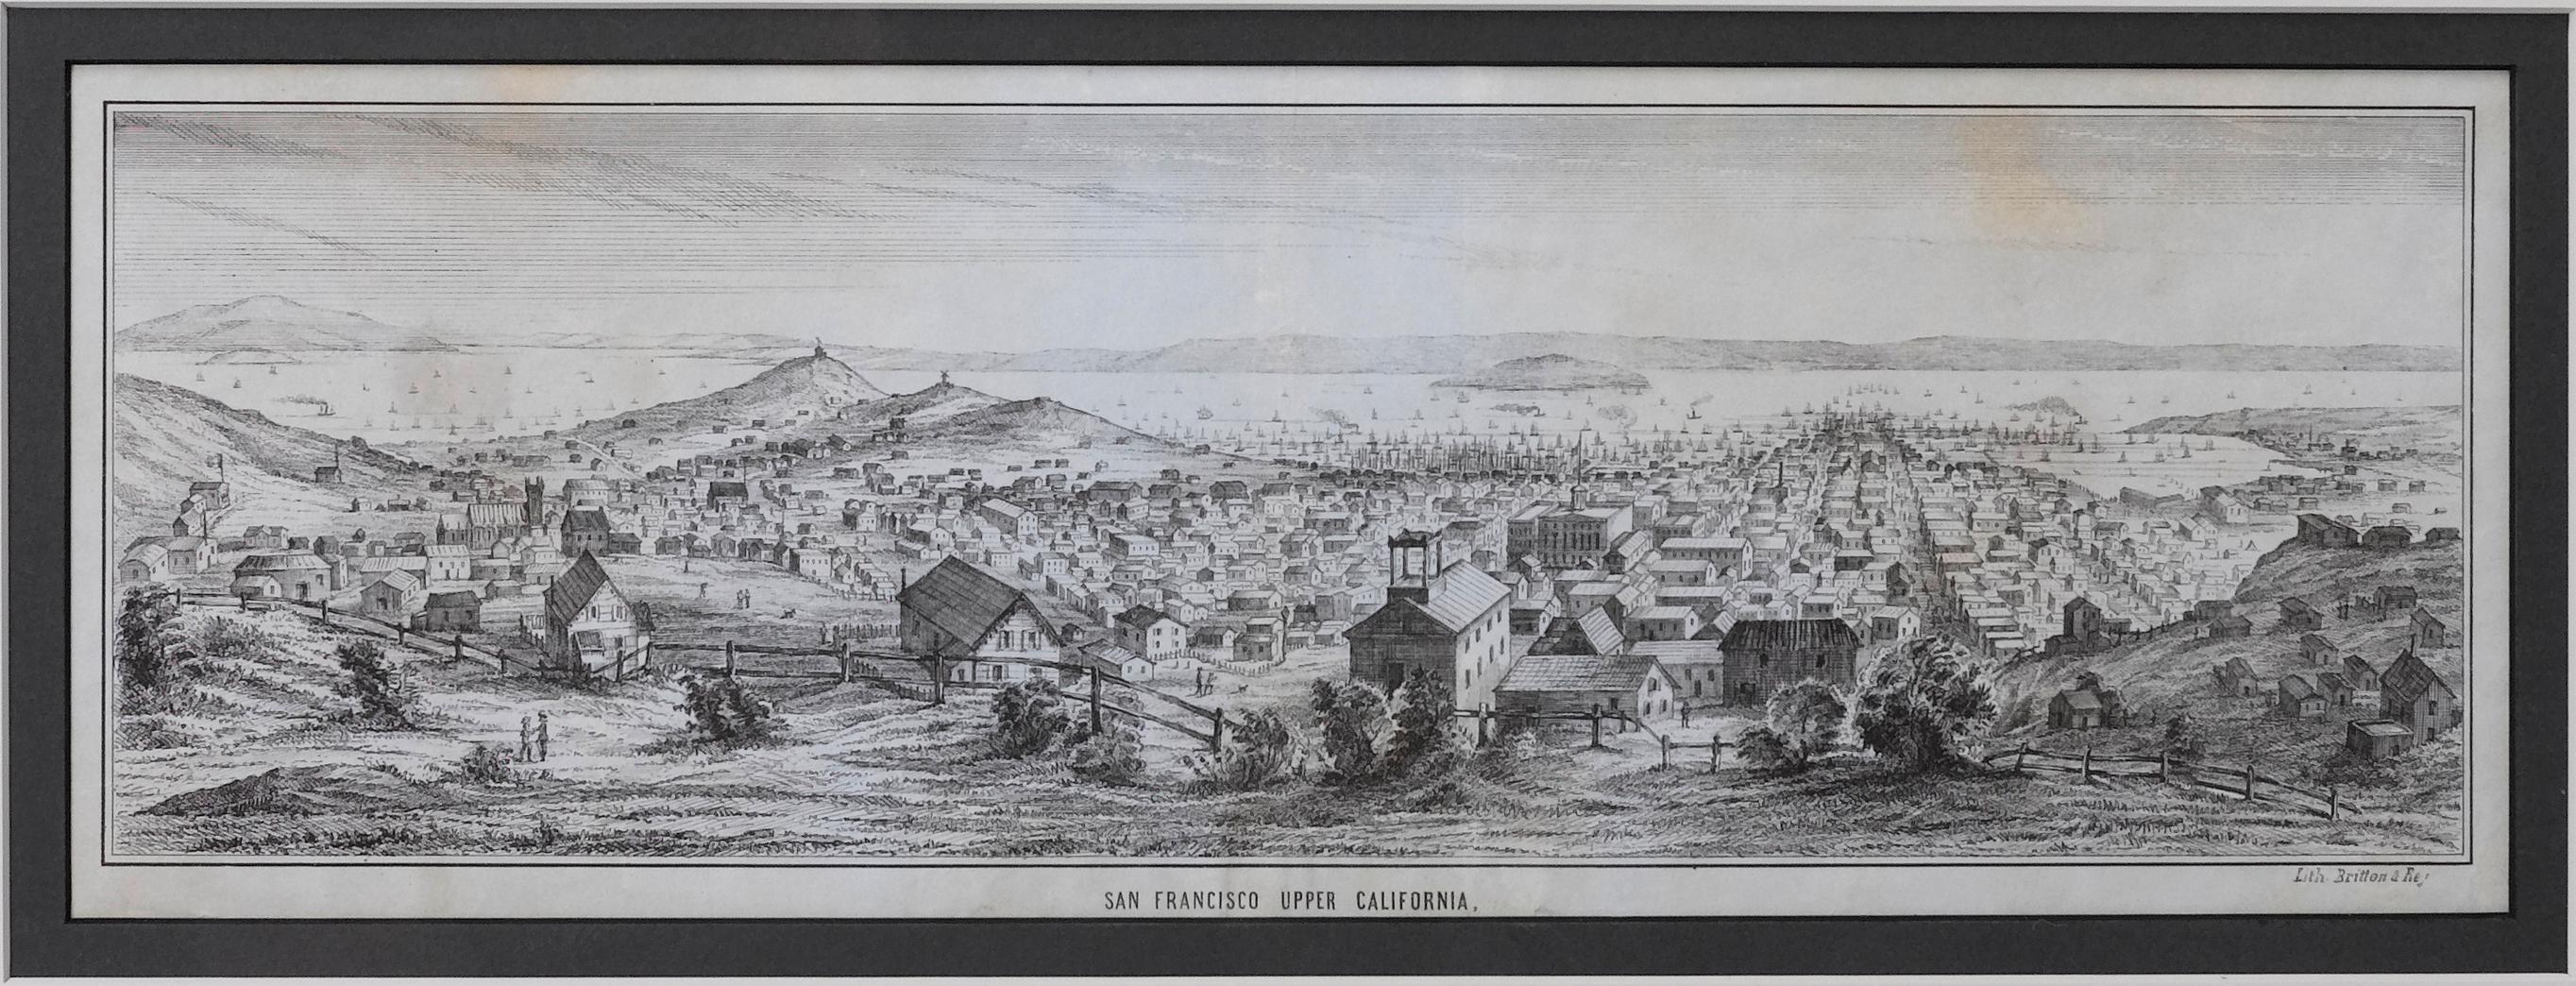 Il s'agit d'une vue illustrée de la ville et du port de San Francisco. Cette lithographie a été imprimée sur du papier vélin gris, sur une double feuille, par les célèbres lithographes Britton & Rey en 1851.

L'image est une vue de San Francisco,